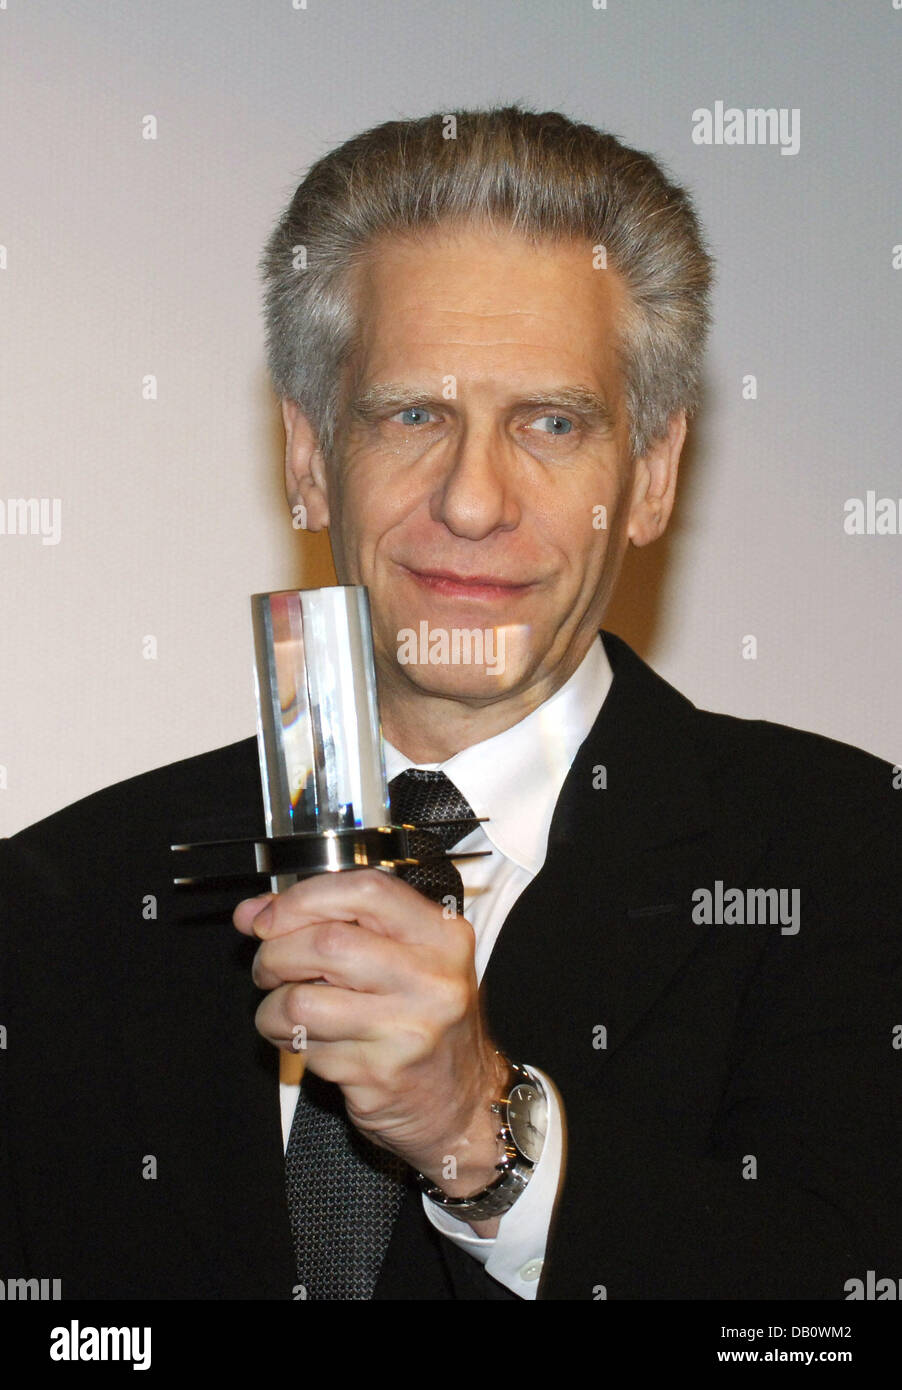 Le cinéaste canadien David Cronenberg pose avec son Douglas-Sirk-Award à la 15e Filmfest Hamburg à Hambourg, Allemagne, 28 septembre 2007. Il a accepté le prix sous fond d'applaudissements par le public qui regardait son dernier ouvrage 'Eastern Promises' immédiatement après. Photo : Wolfgang Langenstrassen Banque D'Images